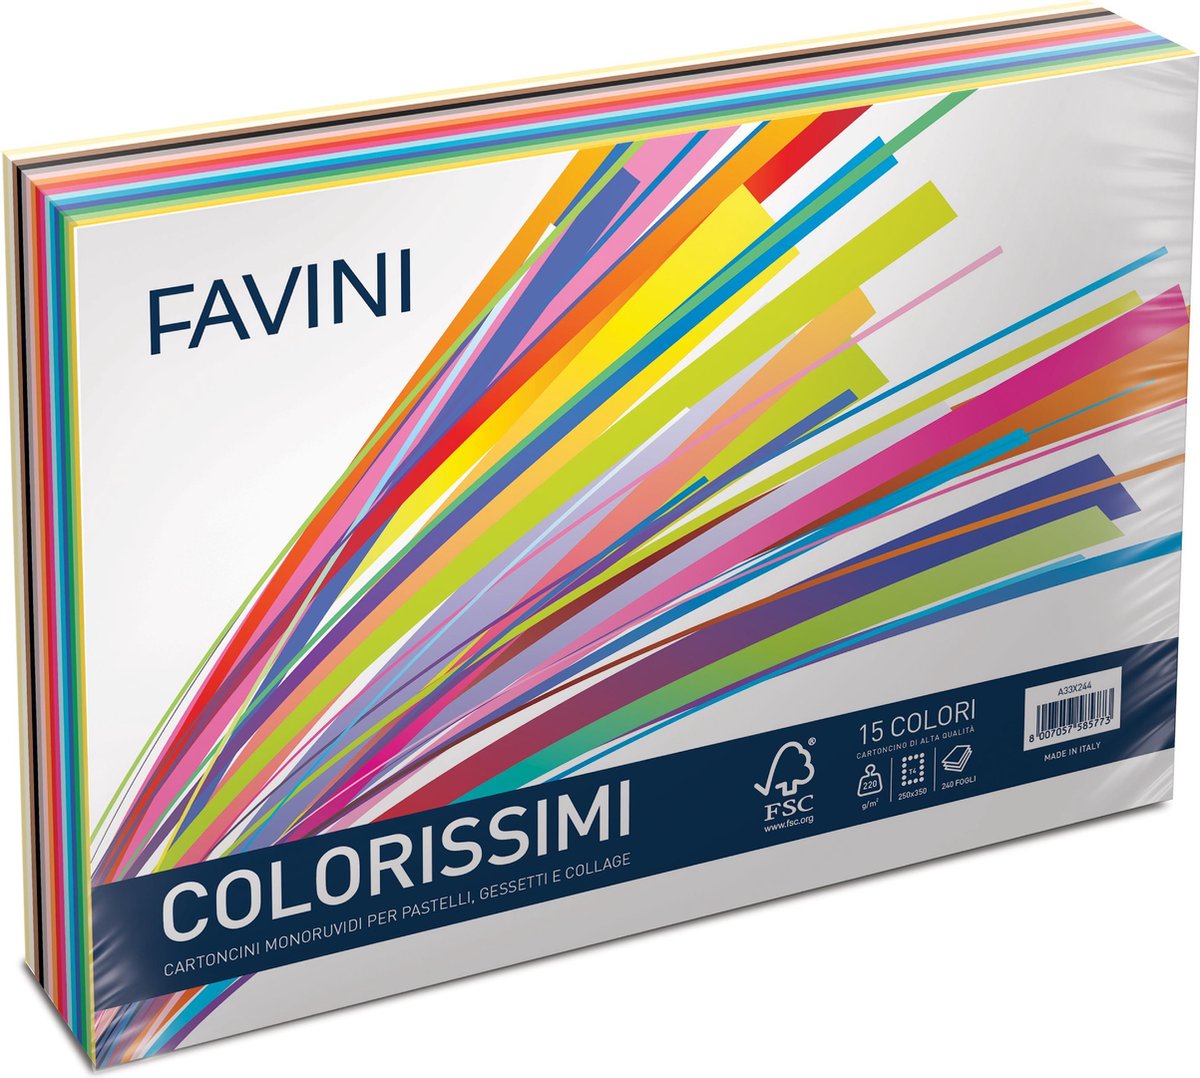 FAVINI COLORISSIMI 100 vel viltmarkering grof papier 250 x 350 mm 220 g/m2 Pastels & Collage 15 kleuren ± 7 vel/kleur